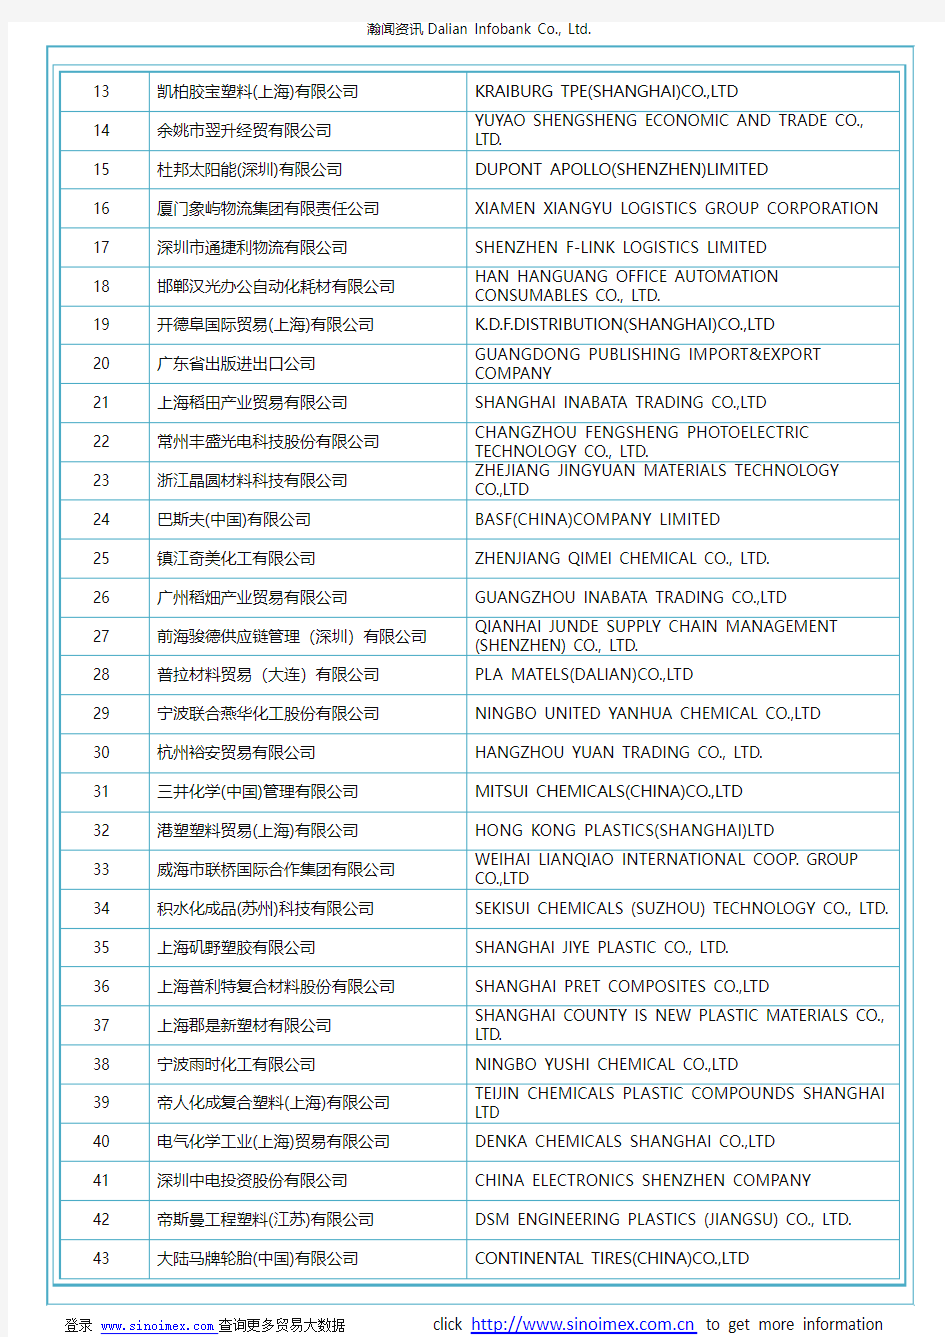 其他初级形状的苯乙烯聚合物(HS 39039000)2017 中国(675个)进口商排名(按进口额排名)